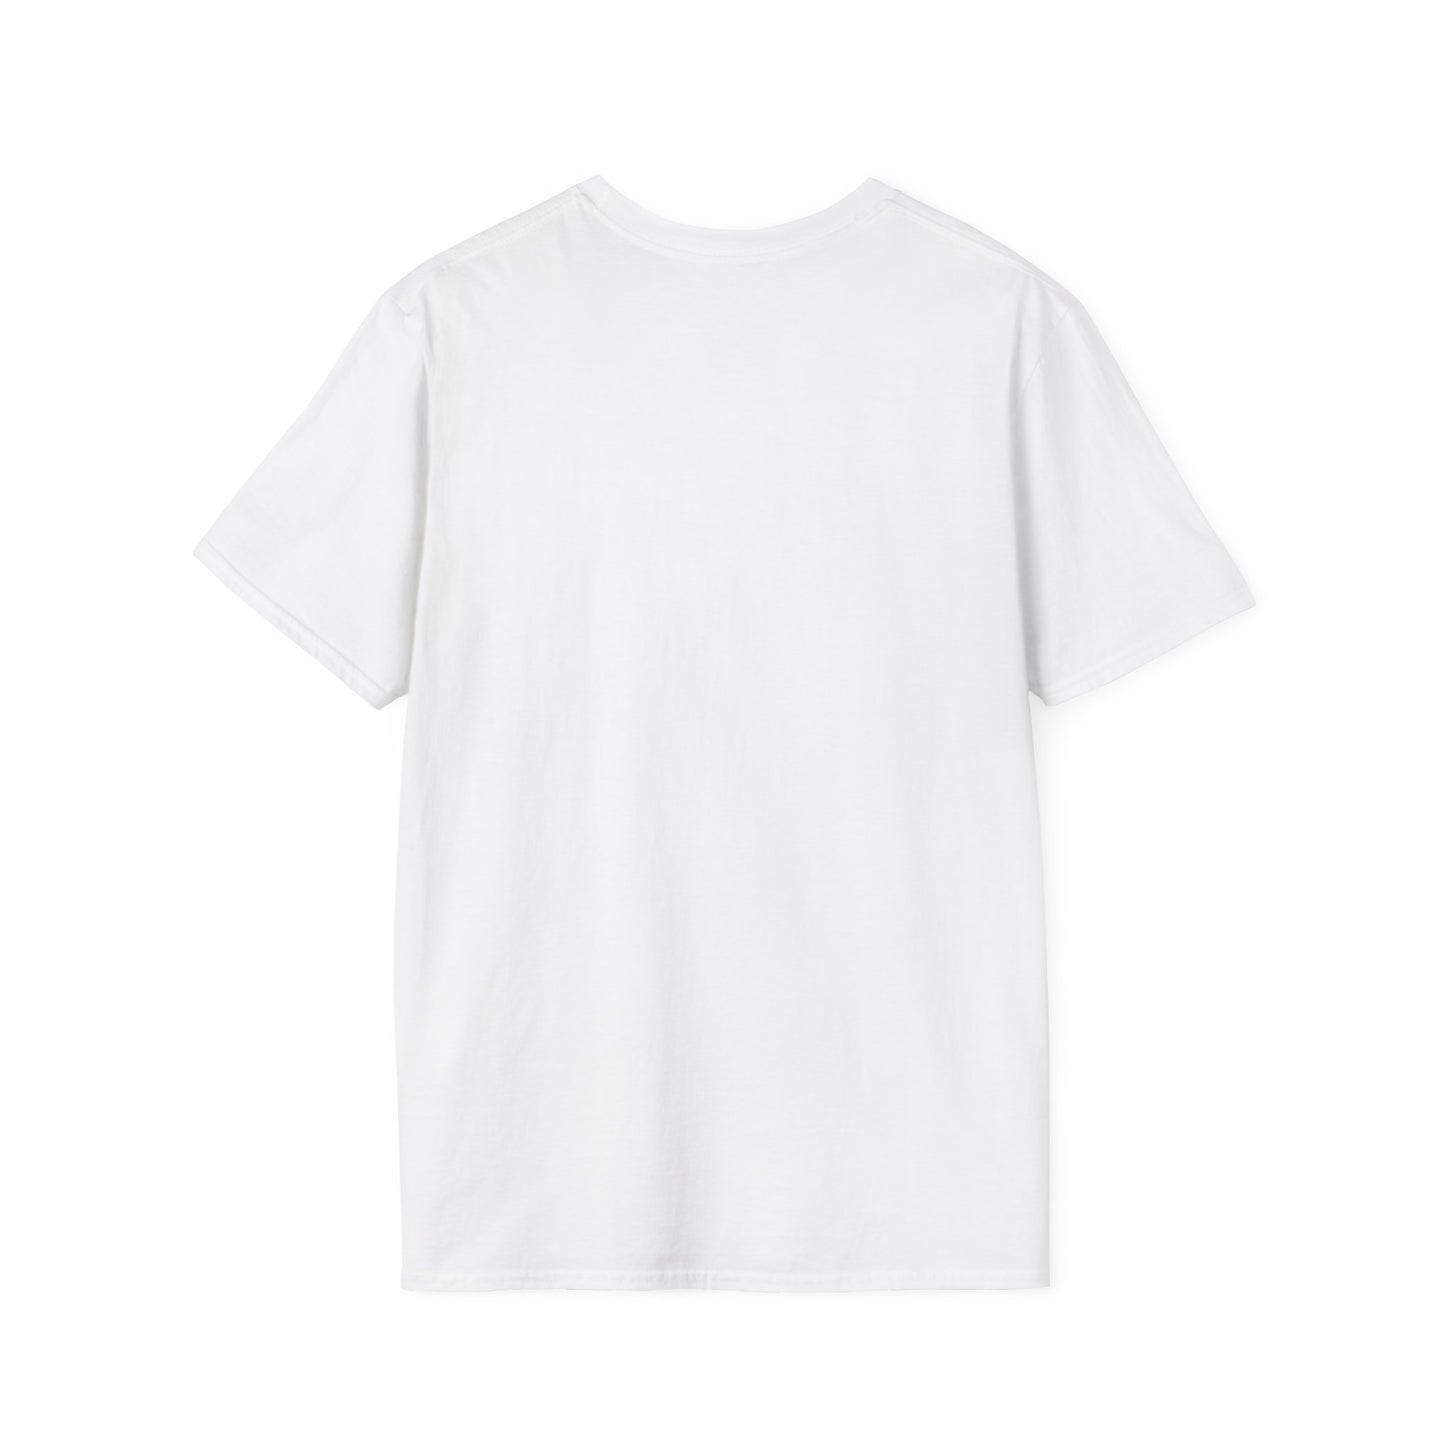 BOSS LADY DENEQUIA Unisex Softstyle T-Shirt